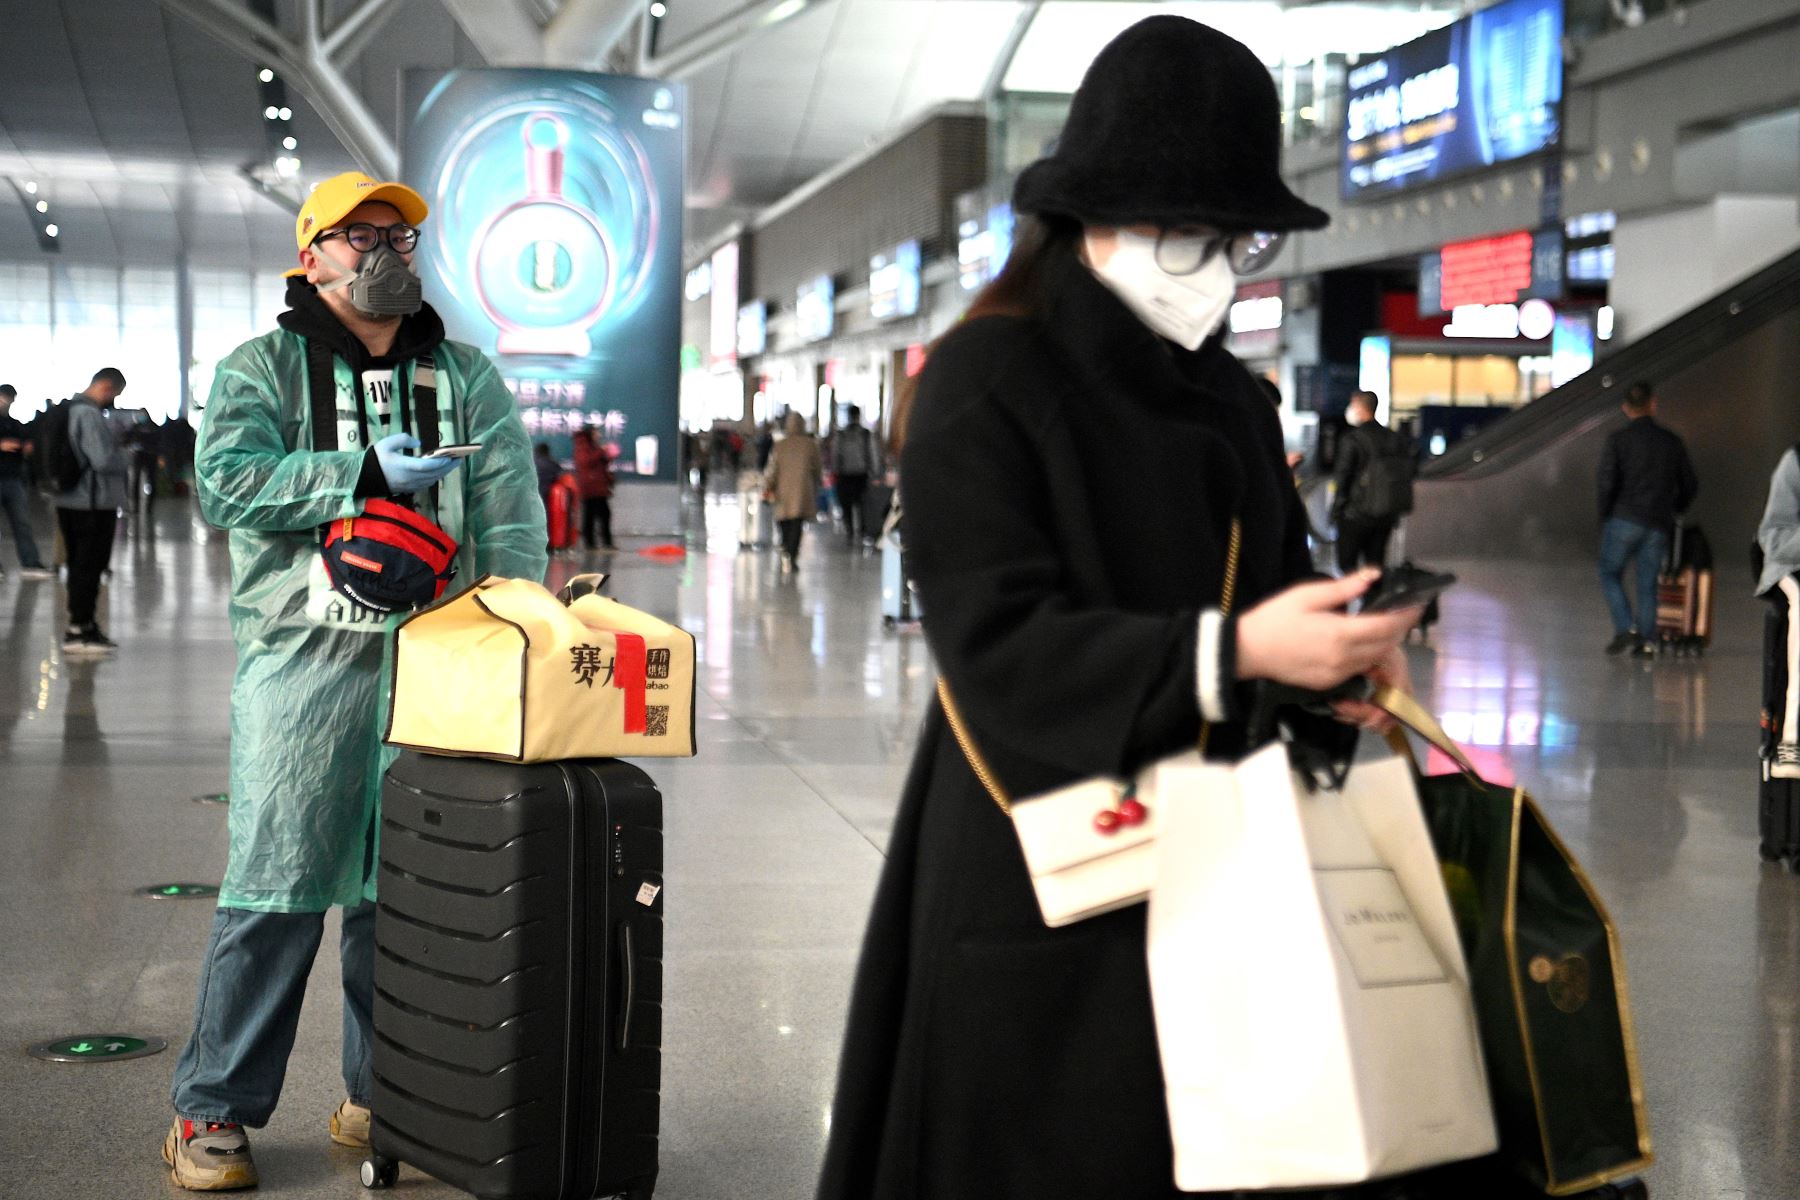 Pasajeros con máscaras faciales esperan sus trenes en la estación ferroviaria de Changsha en China. Foto: AFP